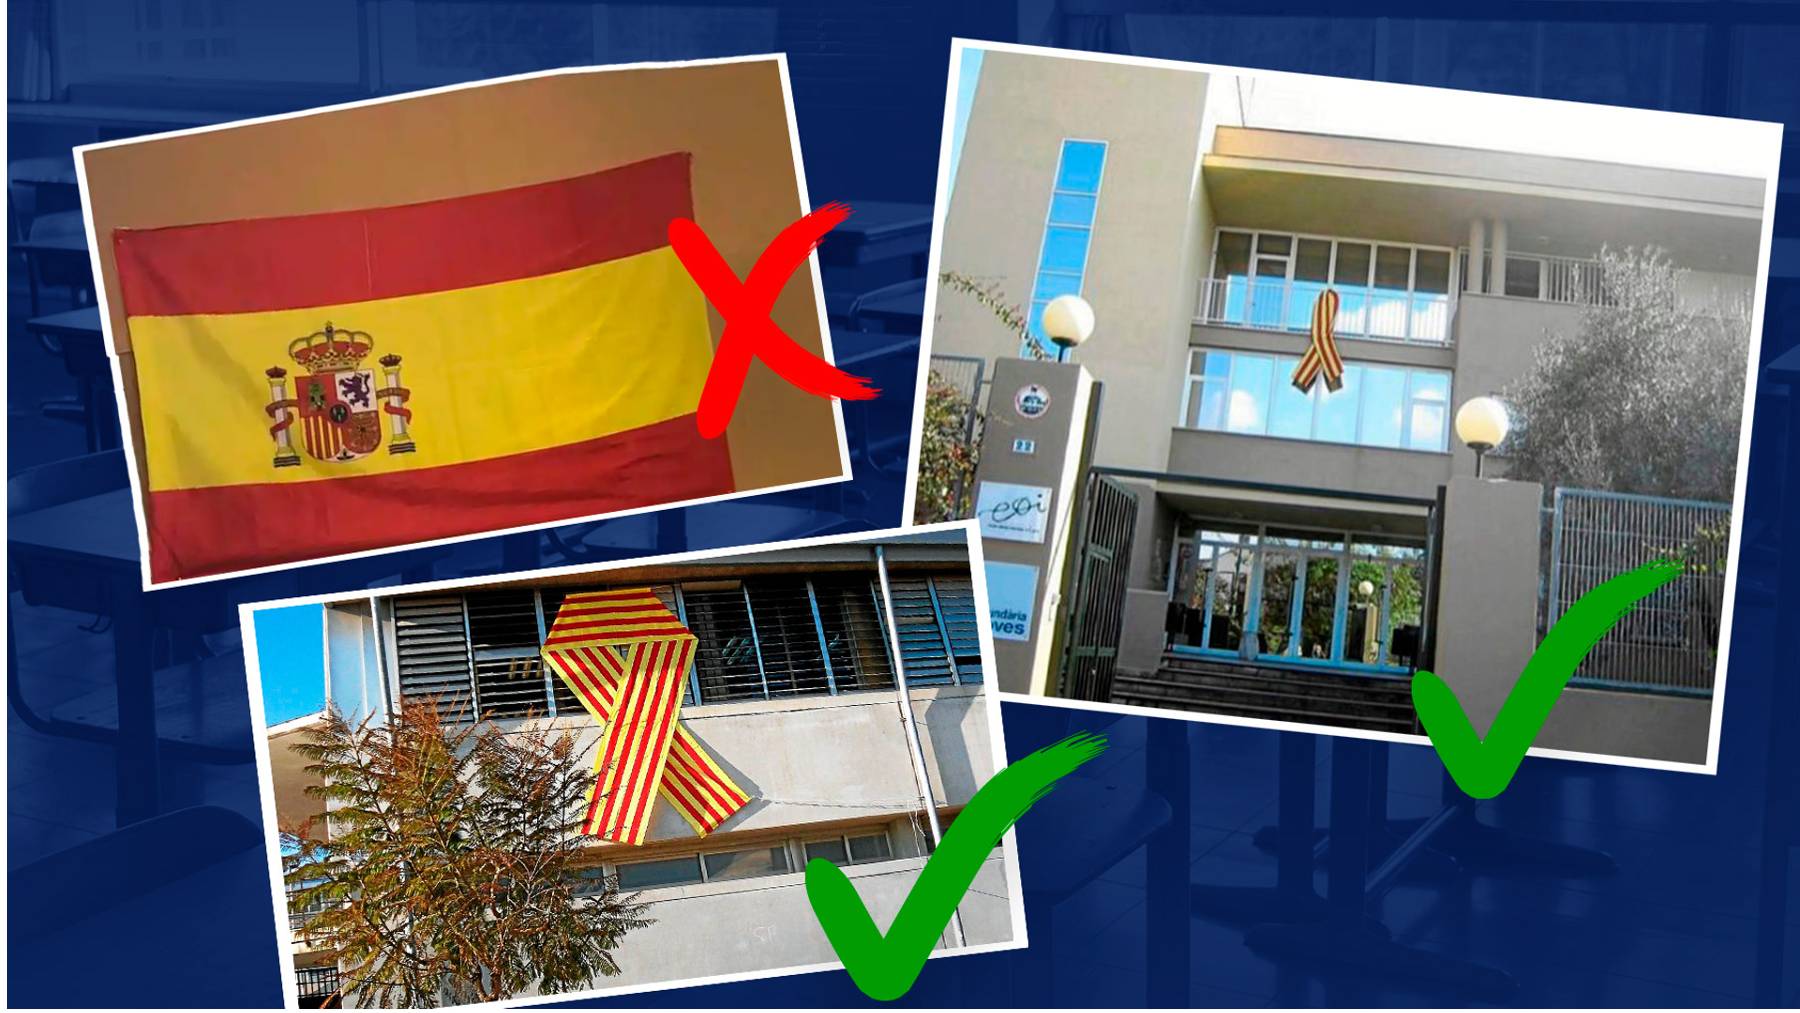 Curiosidades históricas sobre la bandera de España